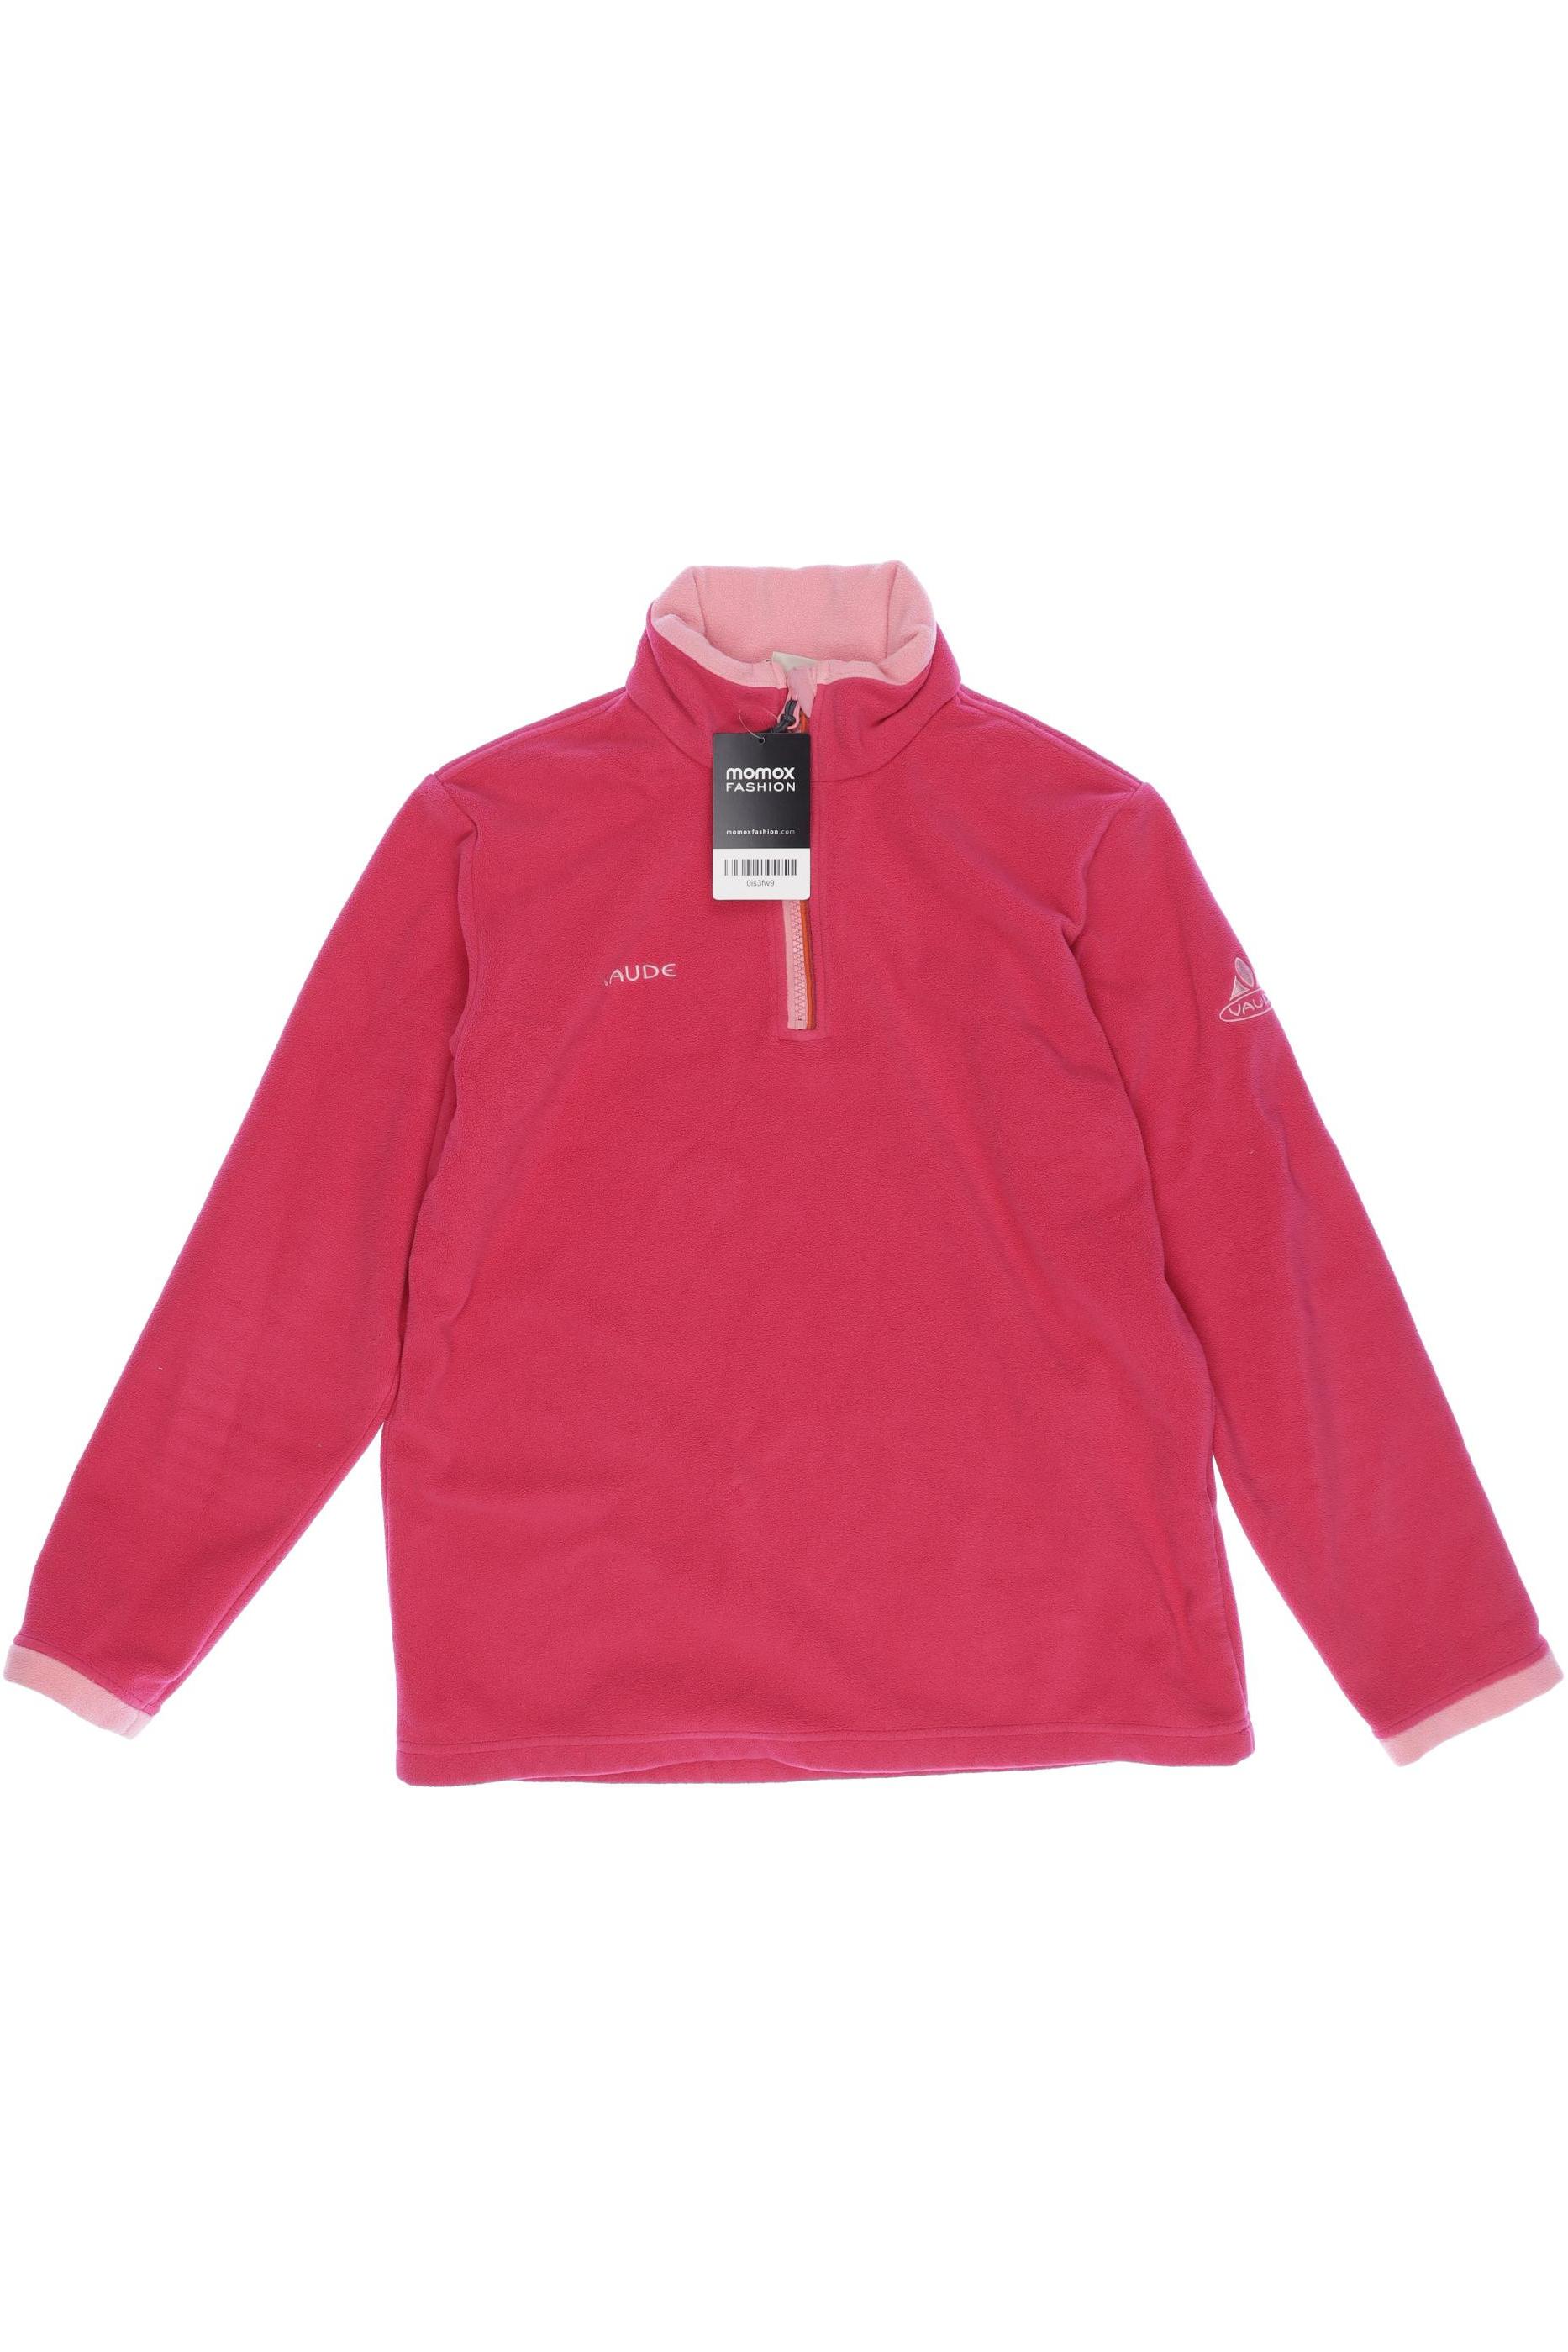 Vaude Damen Hoodies & Sweater, pink, Gr. 152 von Vaude